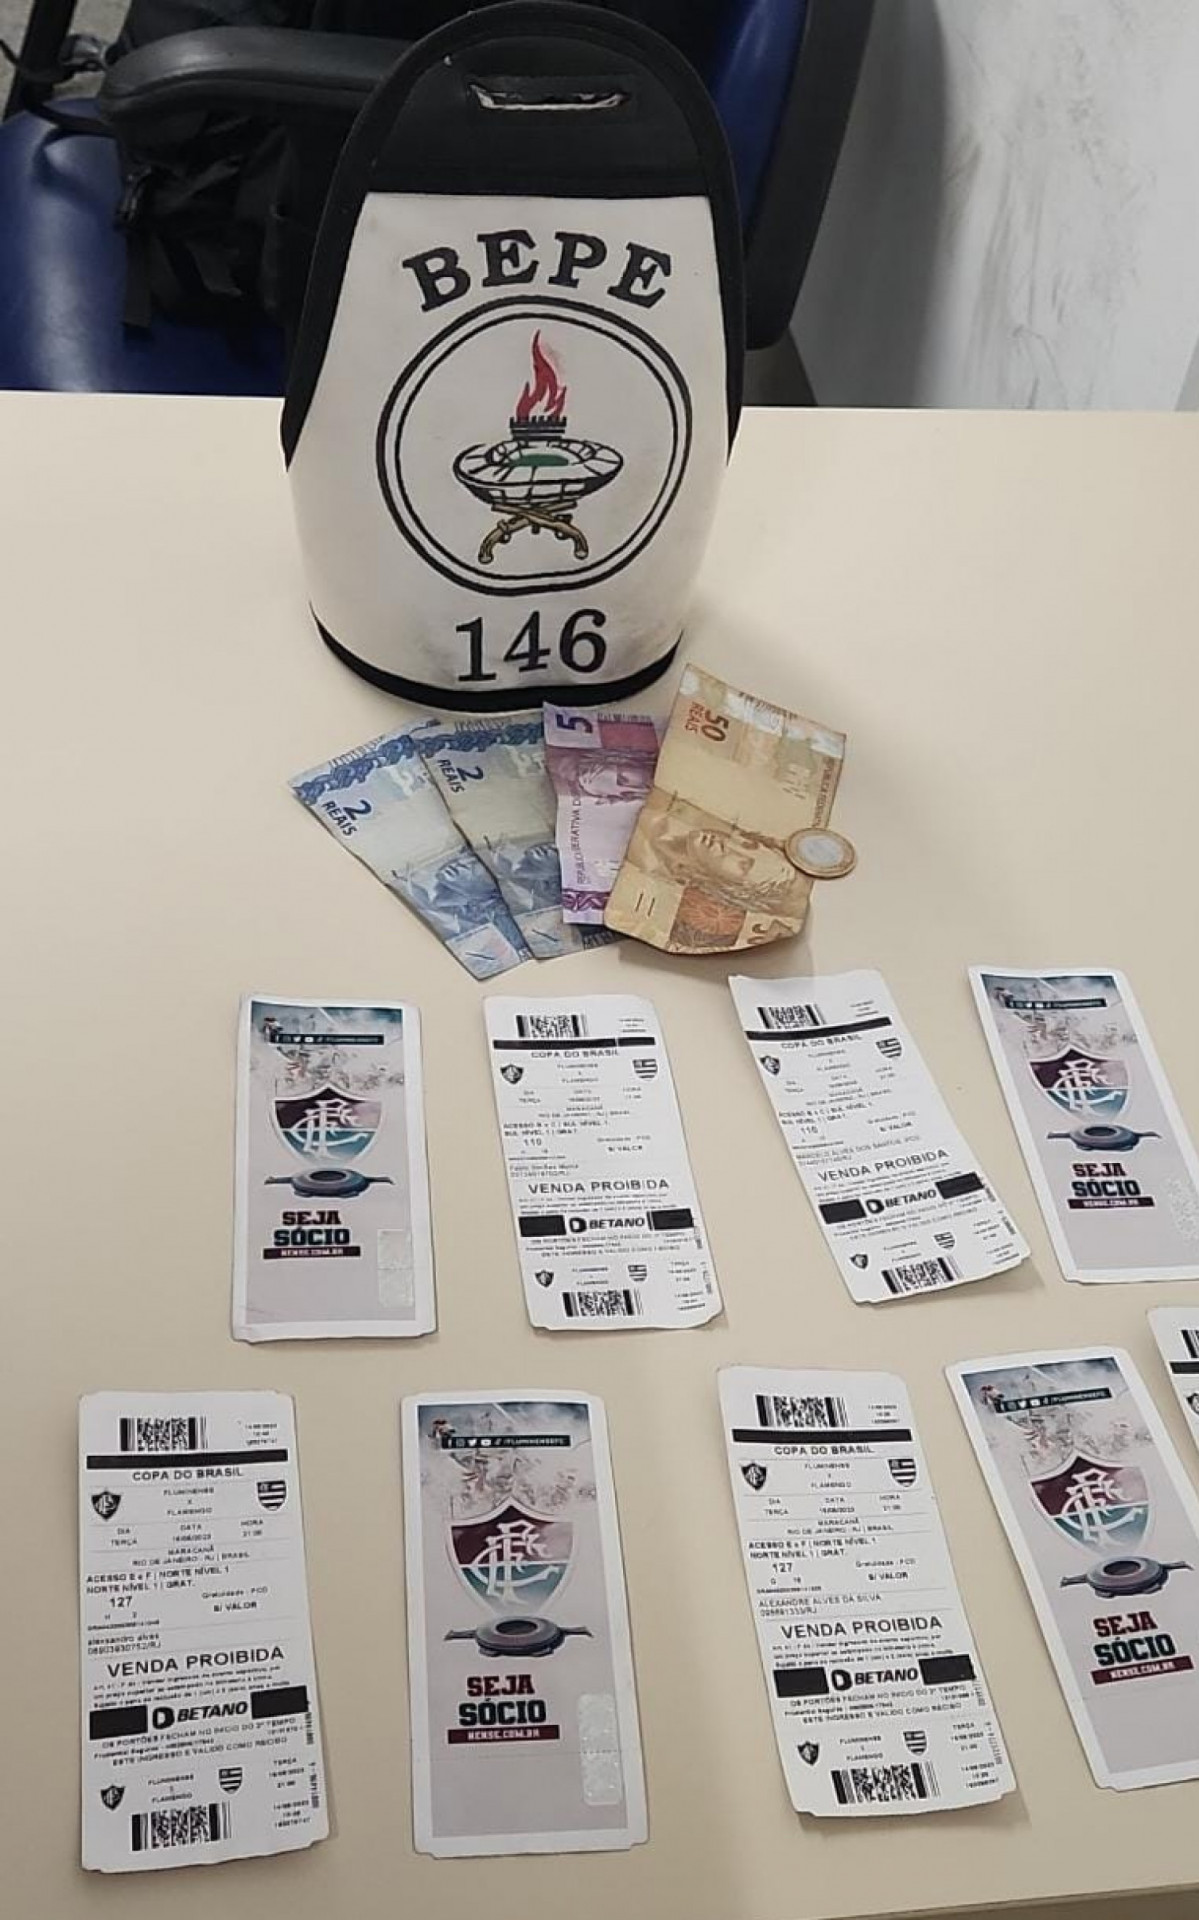 Um homem foi preso vendendo ingressos de forma irregular perto do estádio  -  Divulgação